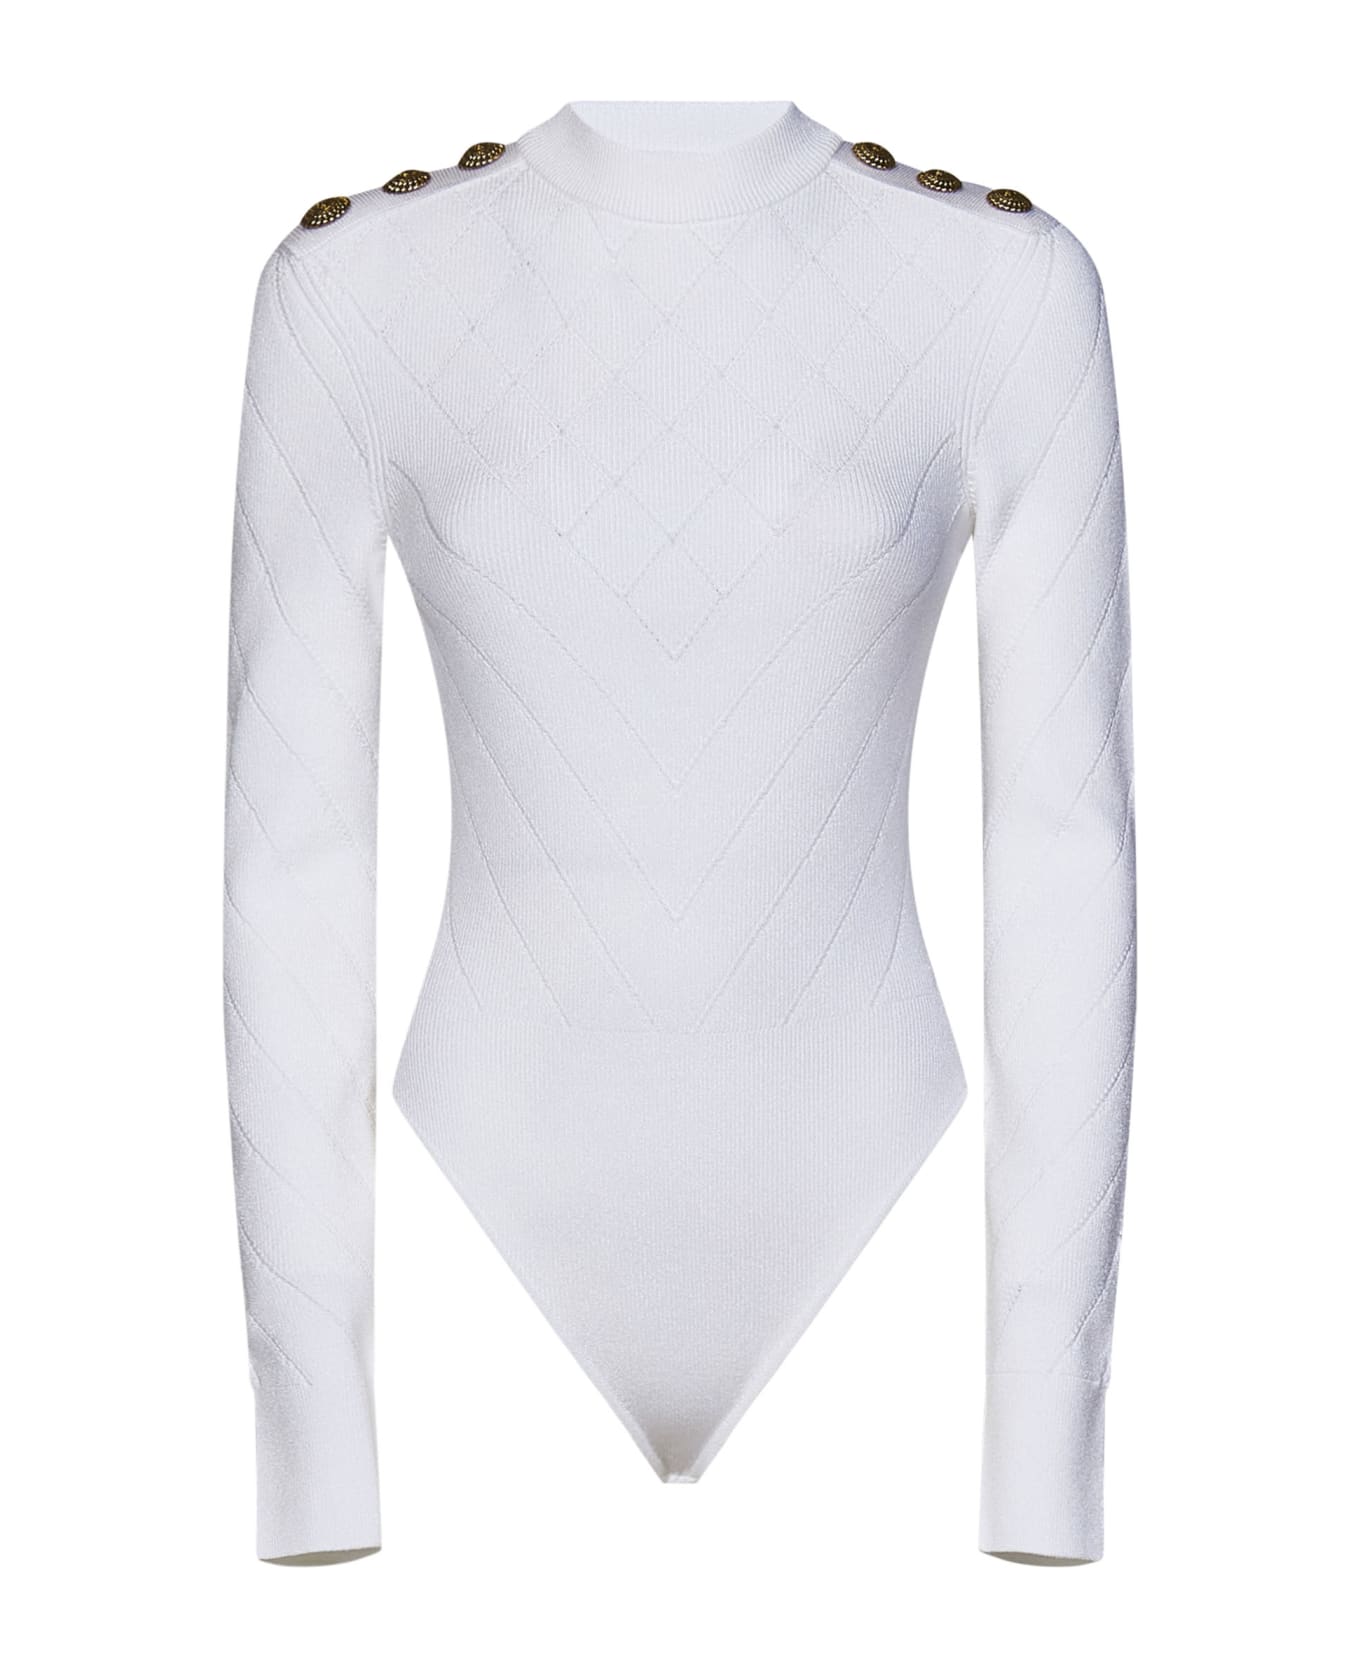 Balmain Paris Bodysuit - White